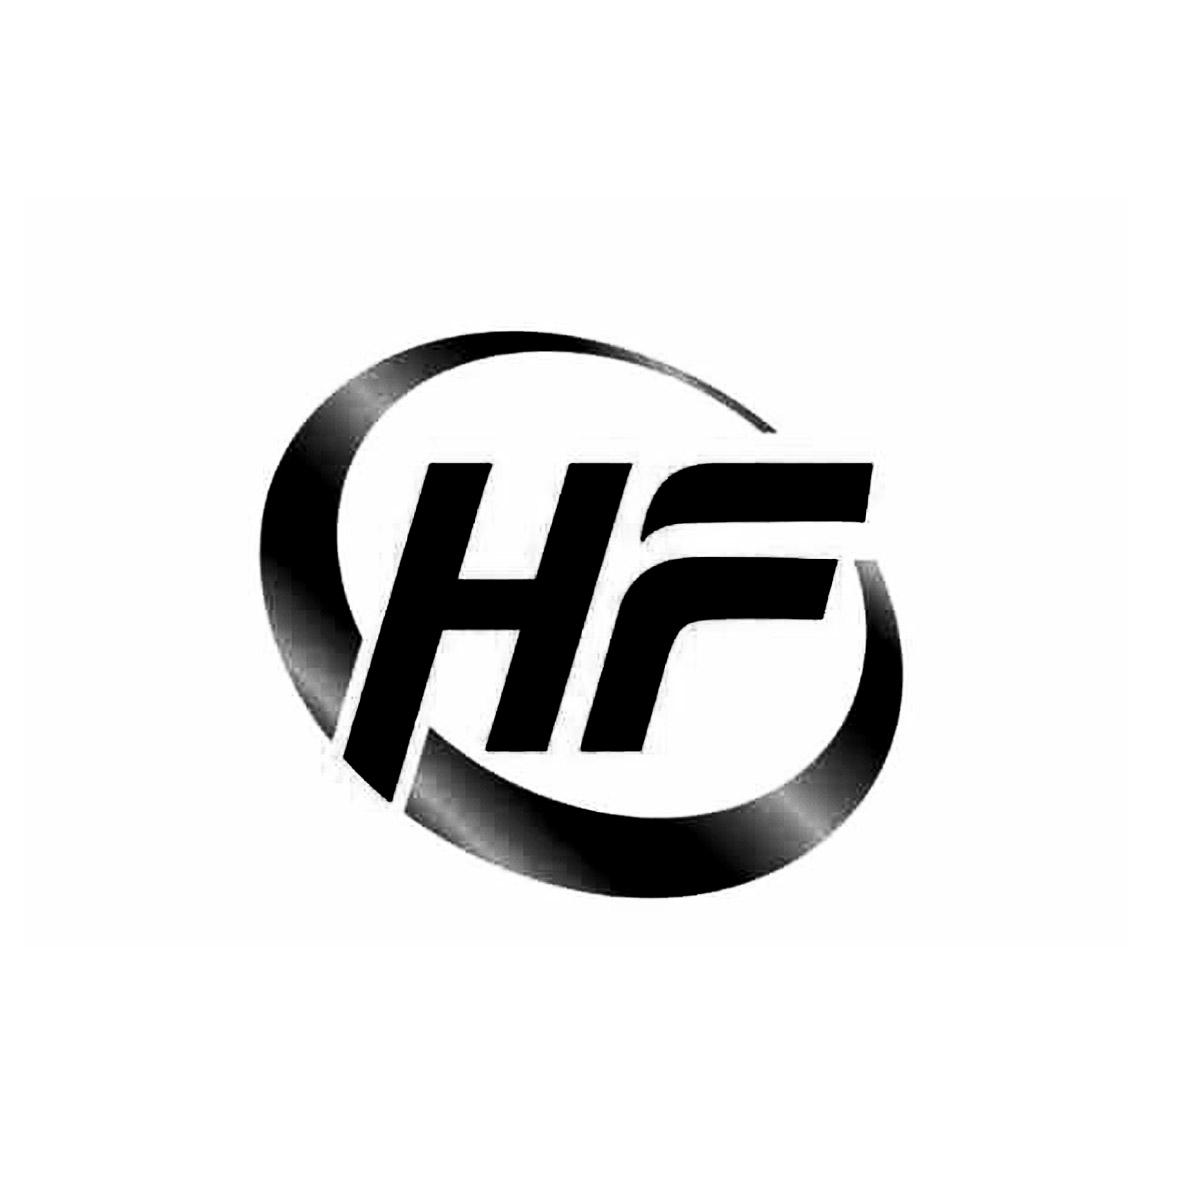 商标文字hf商标注册号 30947051,商标申请人新疆鸿发化工产品有限公司